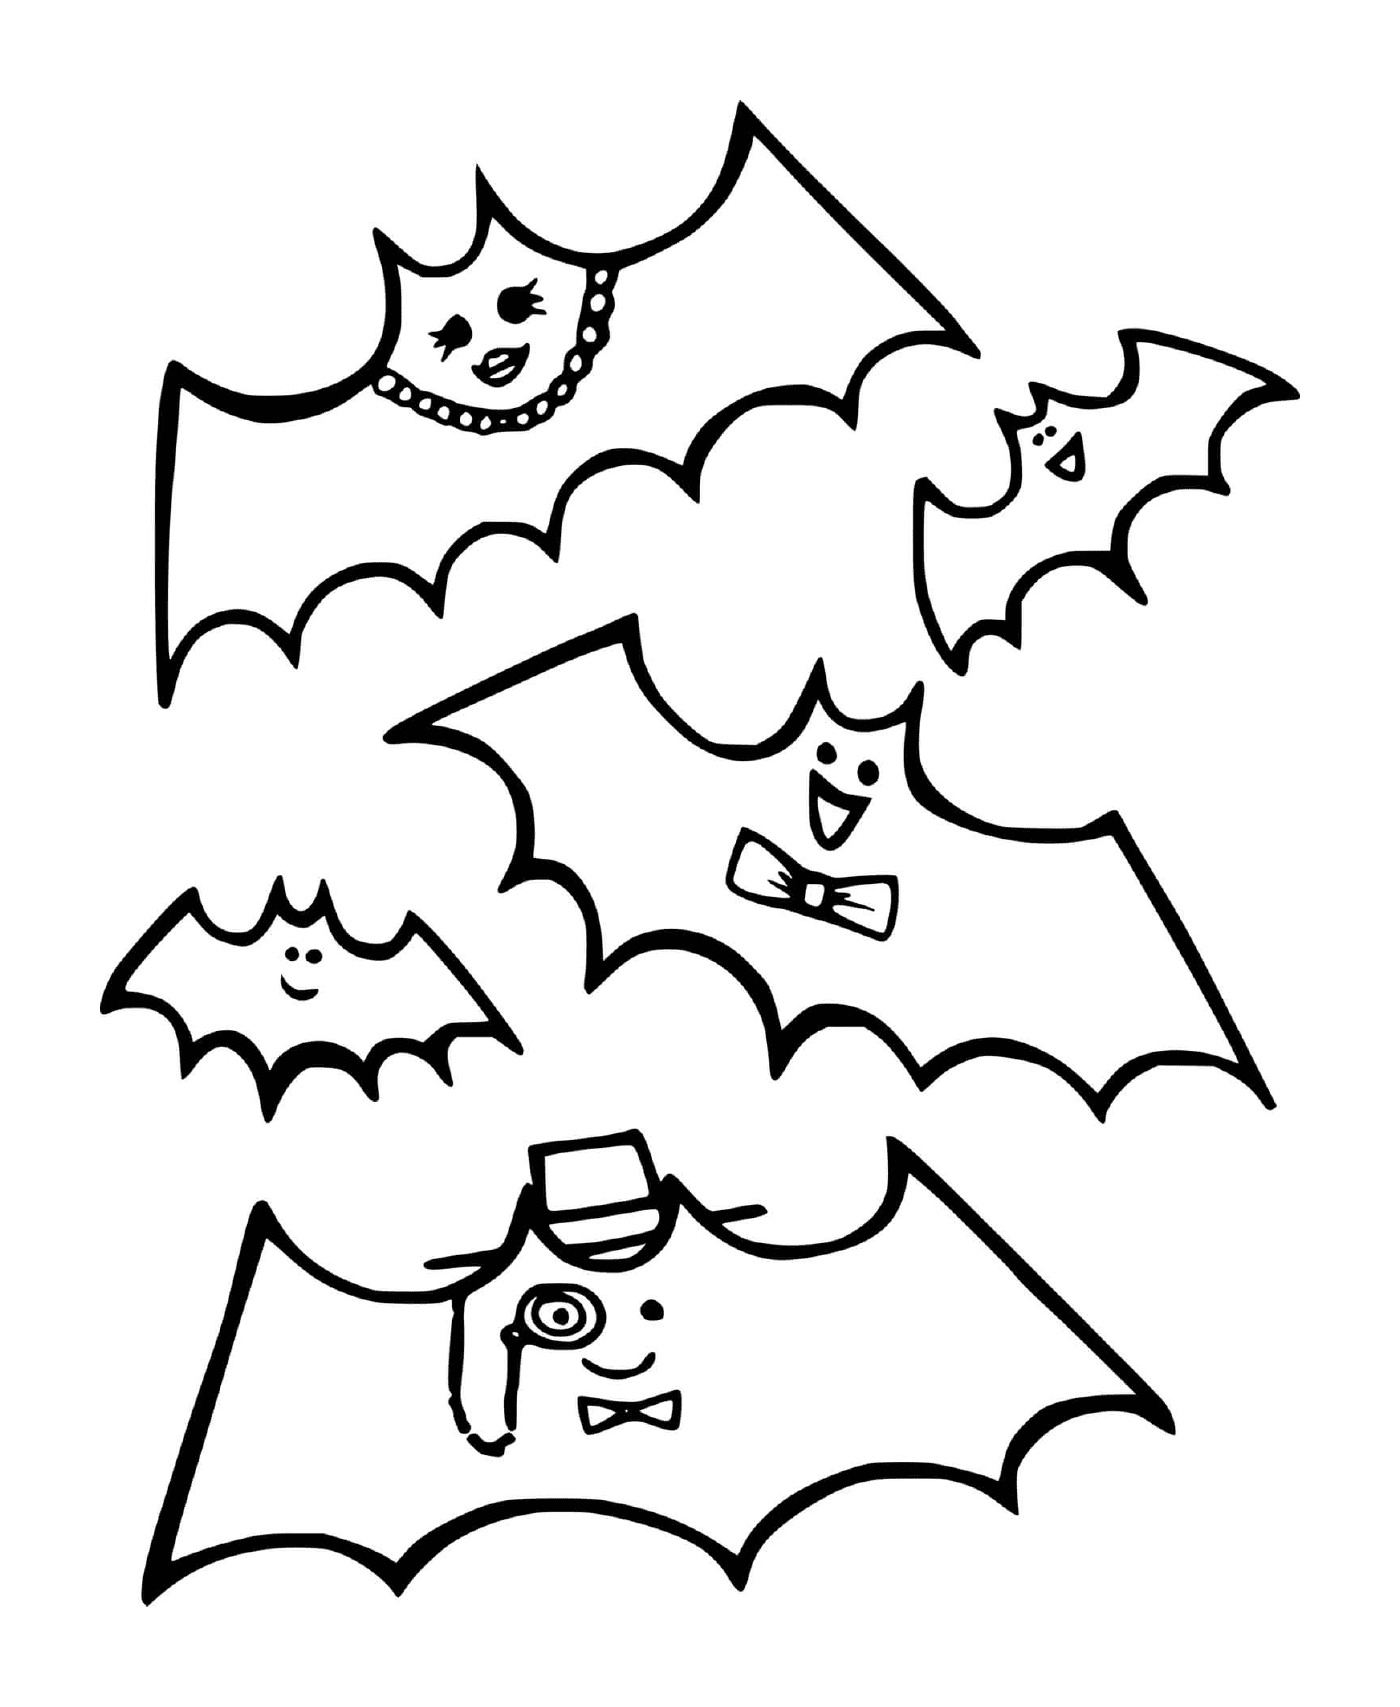  vários morcegos com diferentes decorações 